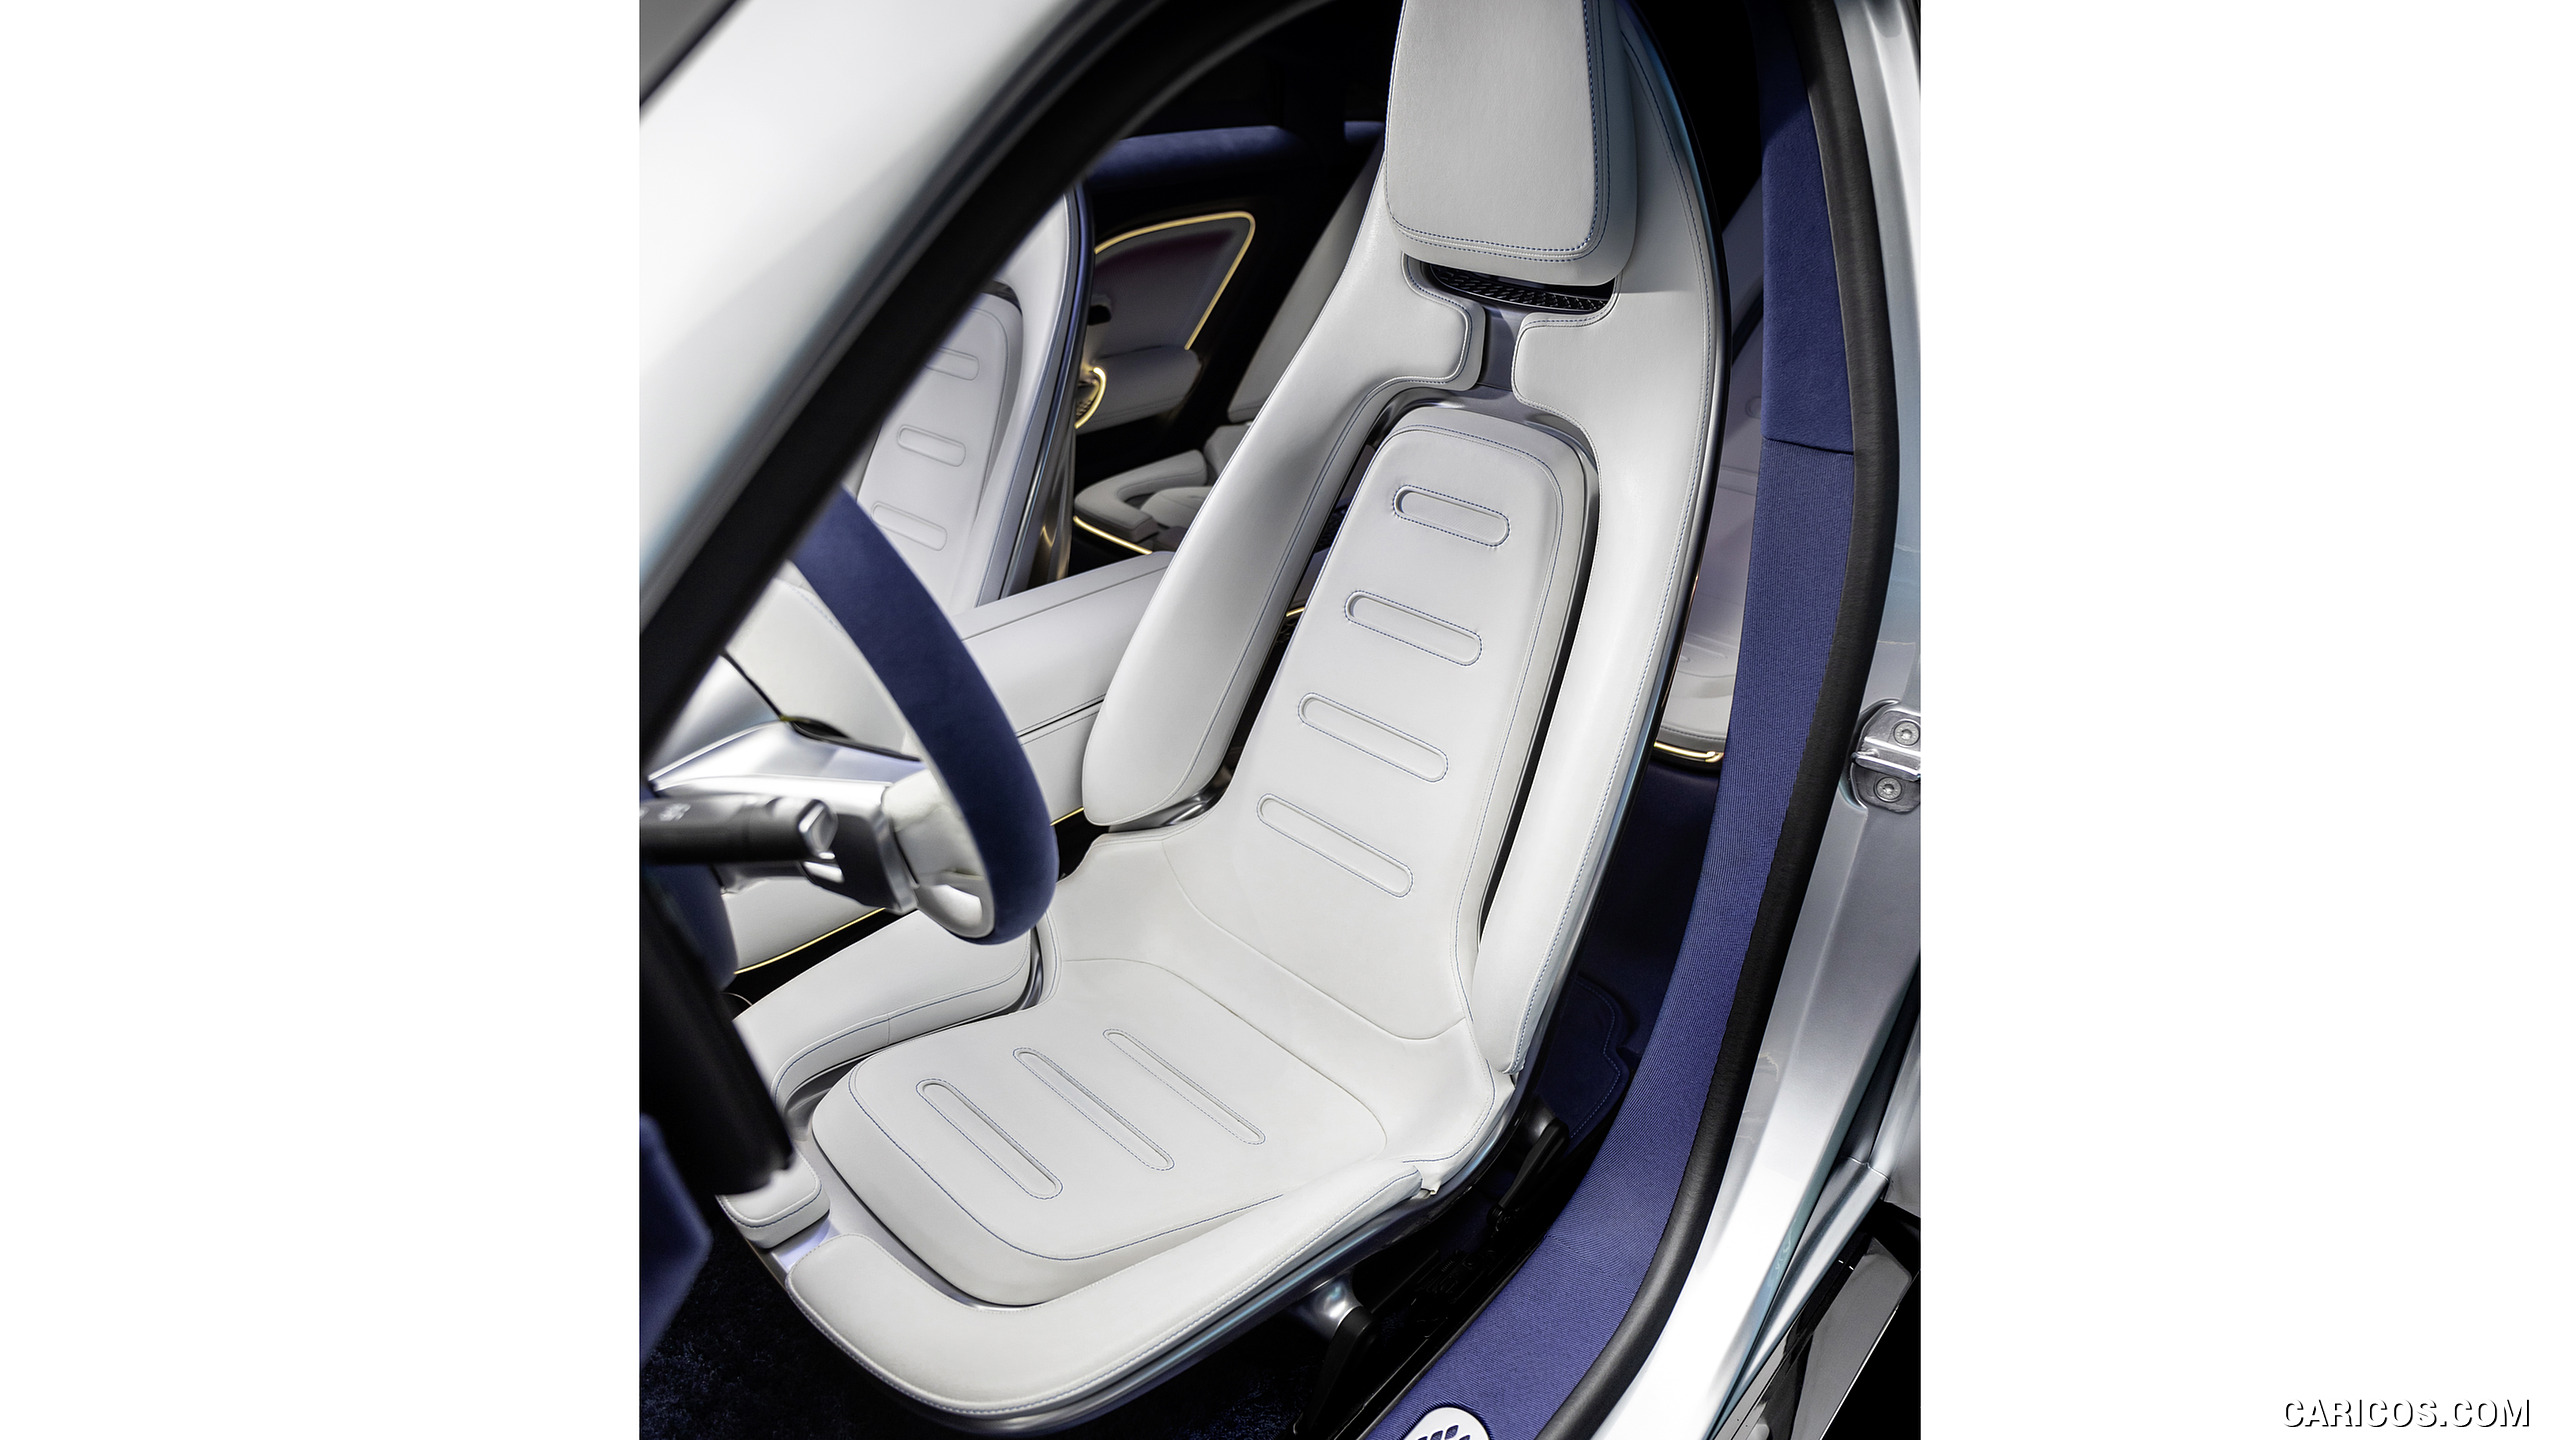 2022 Mercedes-Benz Vision EQXX - Interior, Seats, #49 of 146